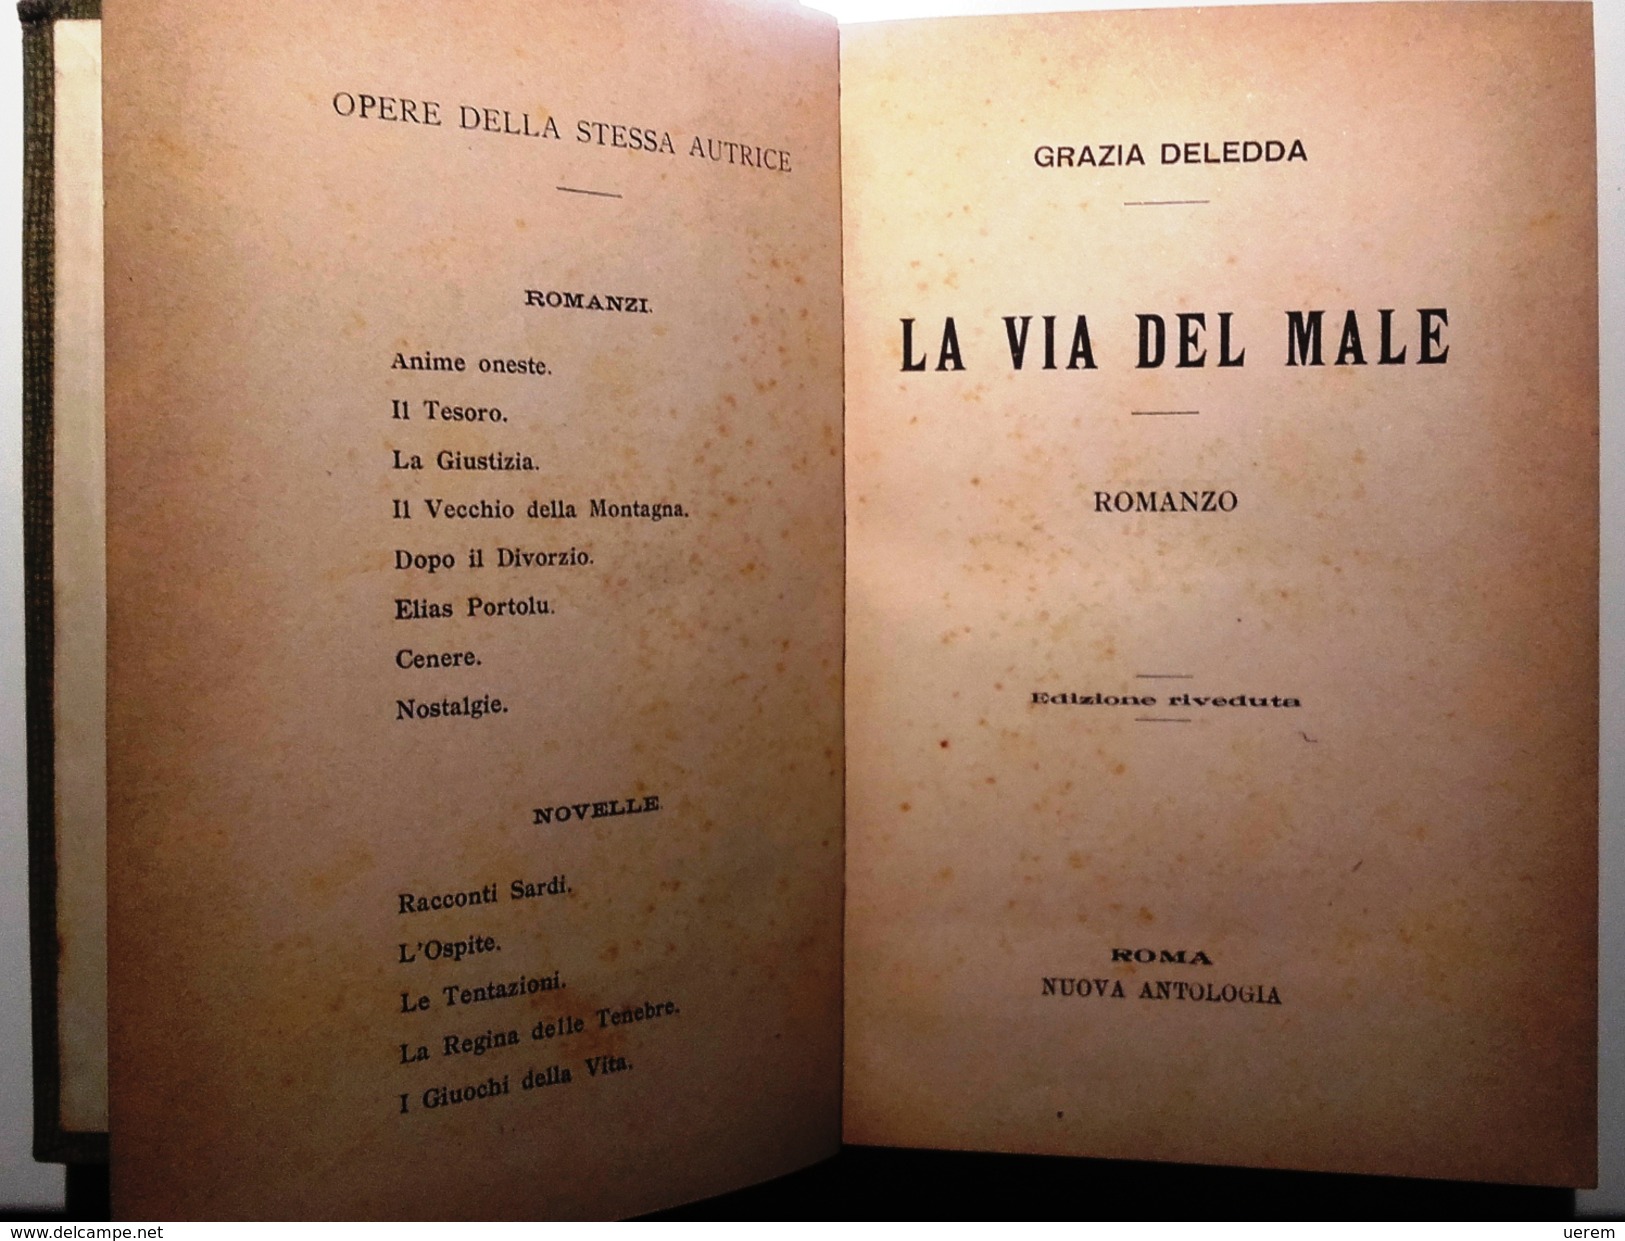 1906 SARDEGNA DELEDDA ROMANZO DELEDDA GRAZIA LA VIA DEL MALE Roma, Nuova Antologia 1906 Pag. 329 &ndash; Cm 13 X 19,5 Le - Old Books